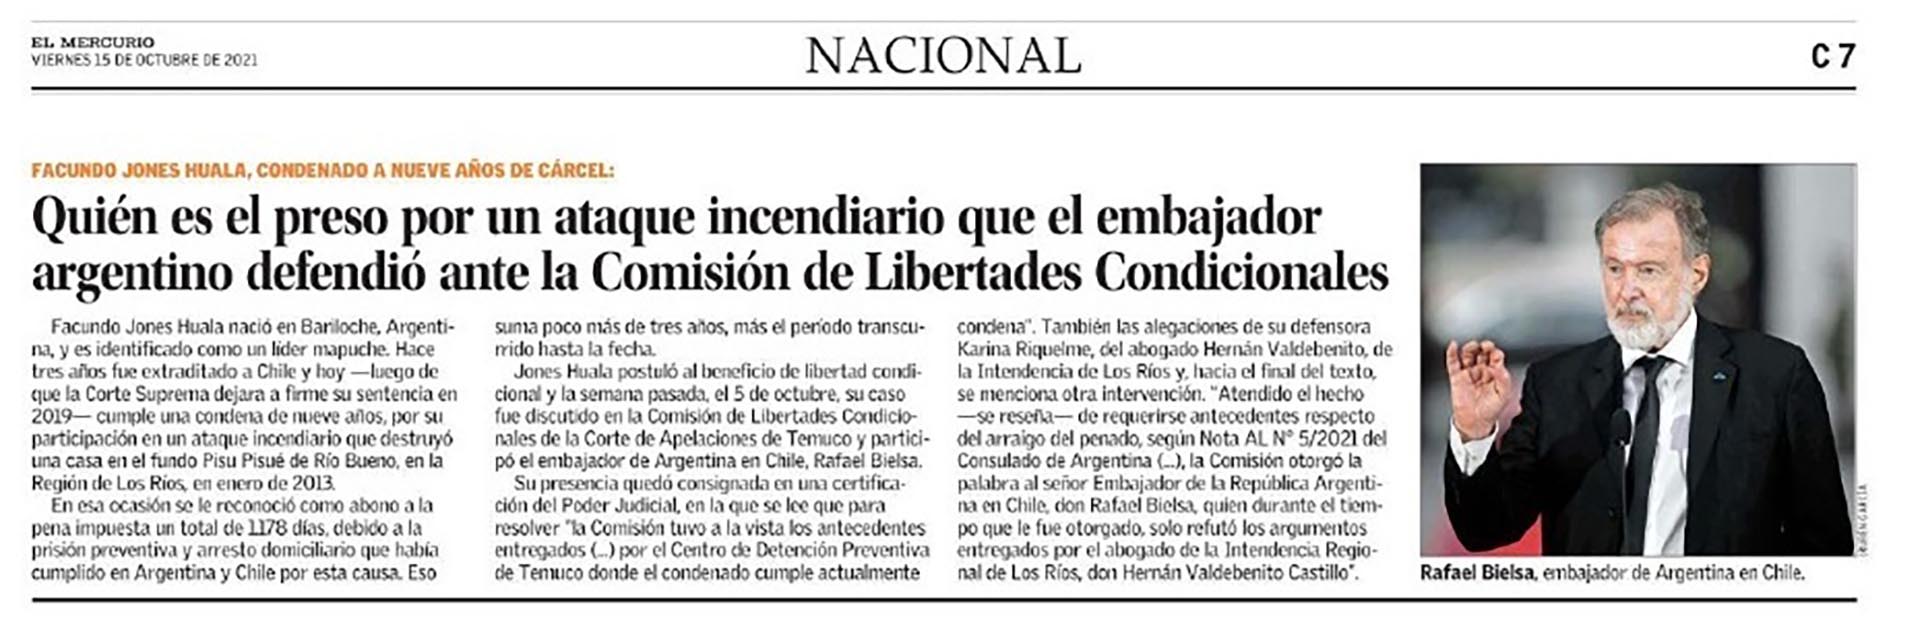 El embajador argentino en Chile, Rafael Bielsa, abogó por la liberación del referente mapuche Facundo Jones Huala, condenado por un atentado en el sur de ese país 